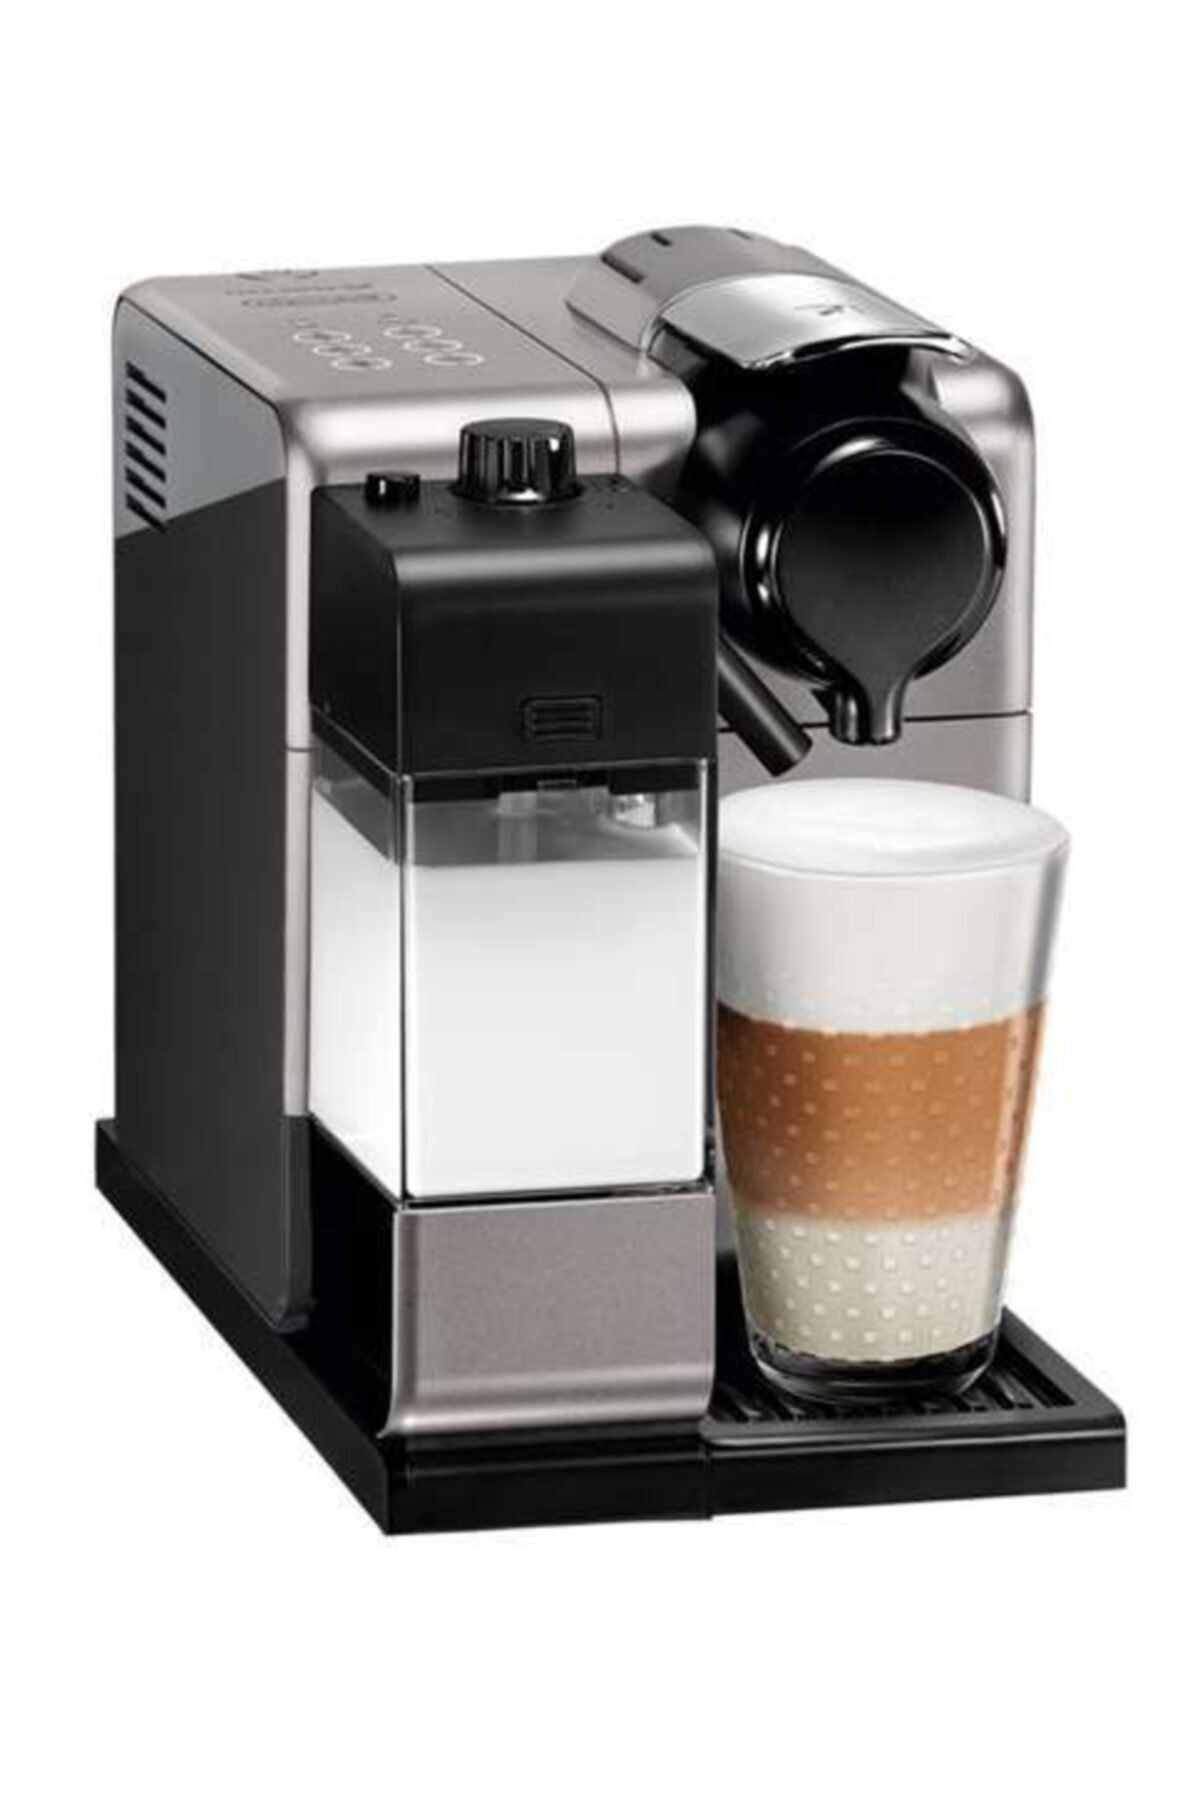 Nespresso Lattissima Touch Silver Kahve Makinesi Fiyatı, Yorumları - Trendyol